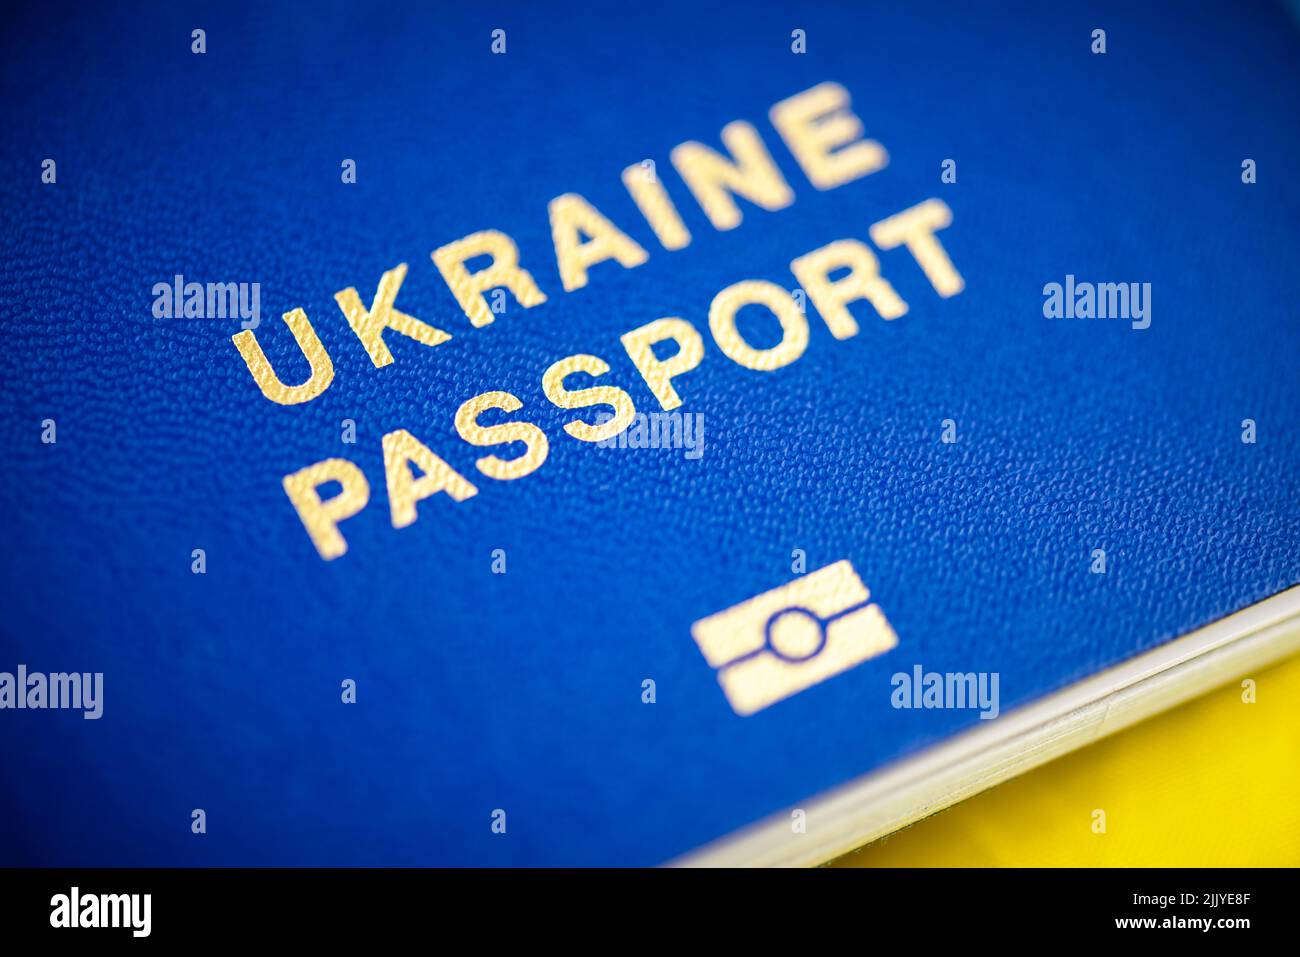 Pasaportes biométricos ucranianos en un primer plano de la bandera amarilla-azul nacional. Fotografía macro Foto de stock